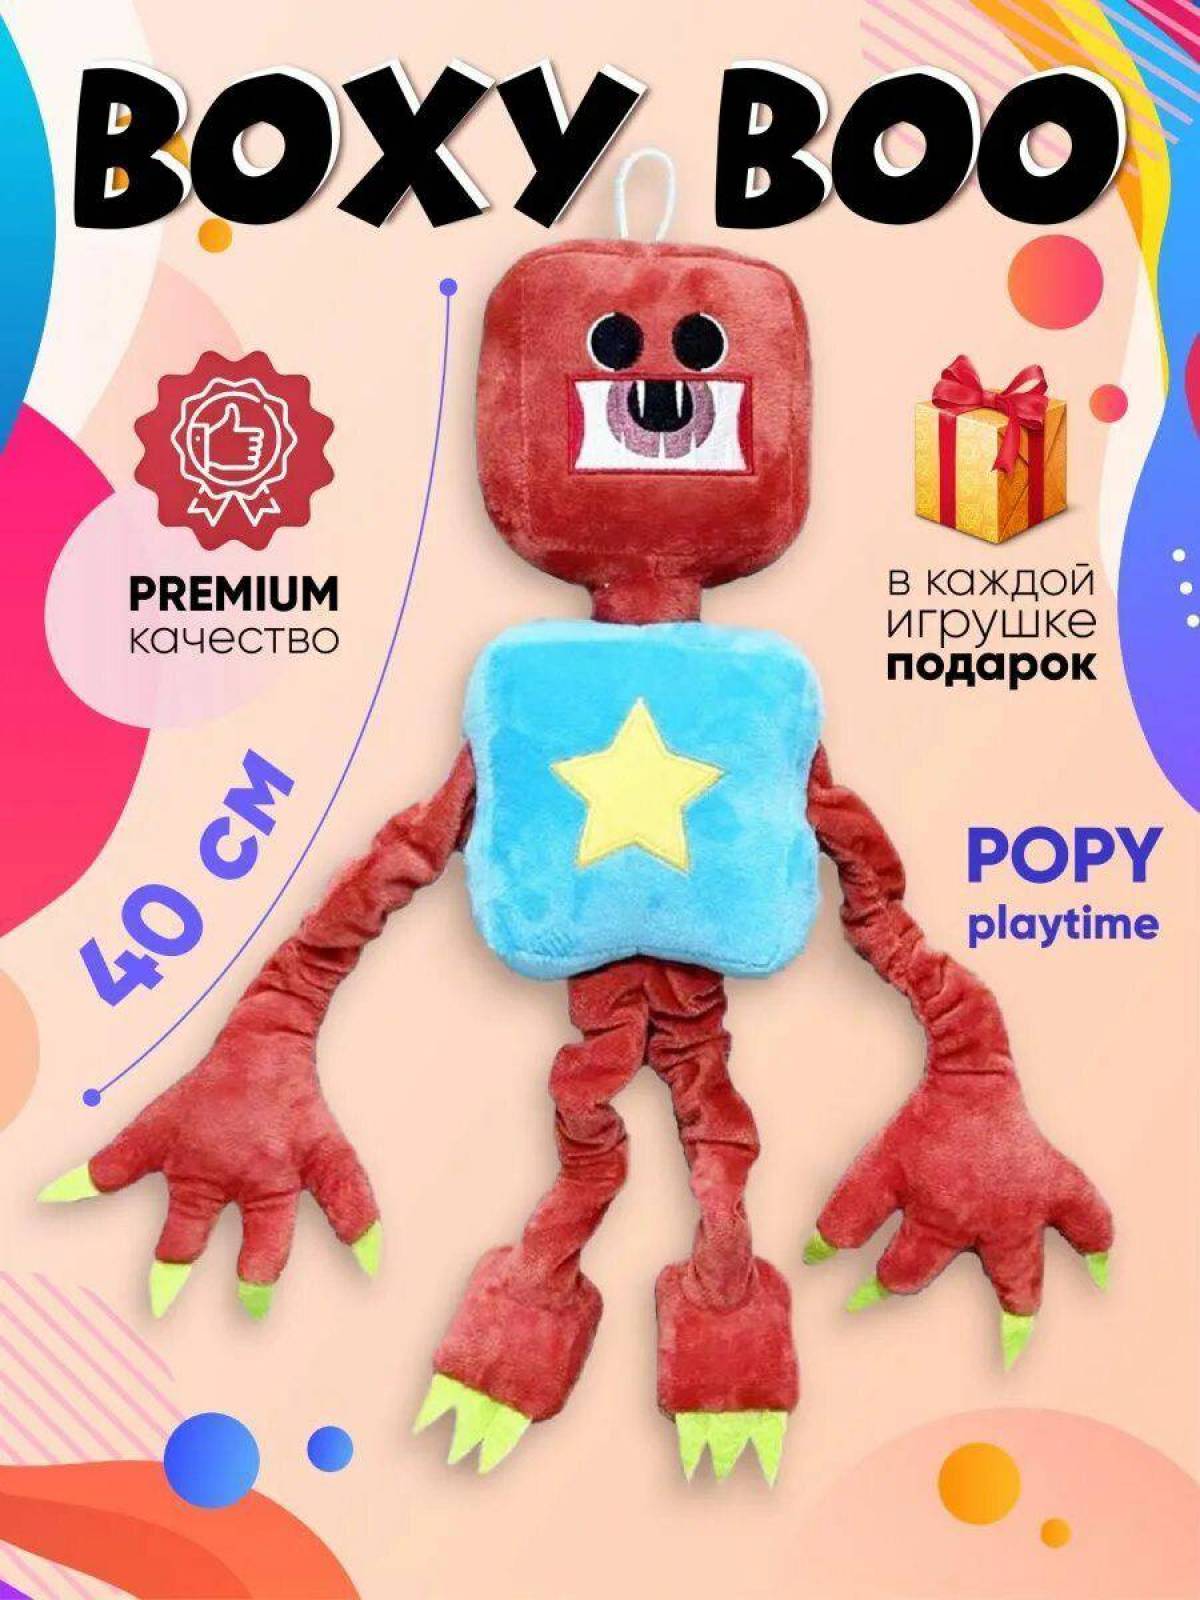 Boxy boo poppy playtime #35